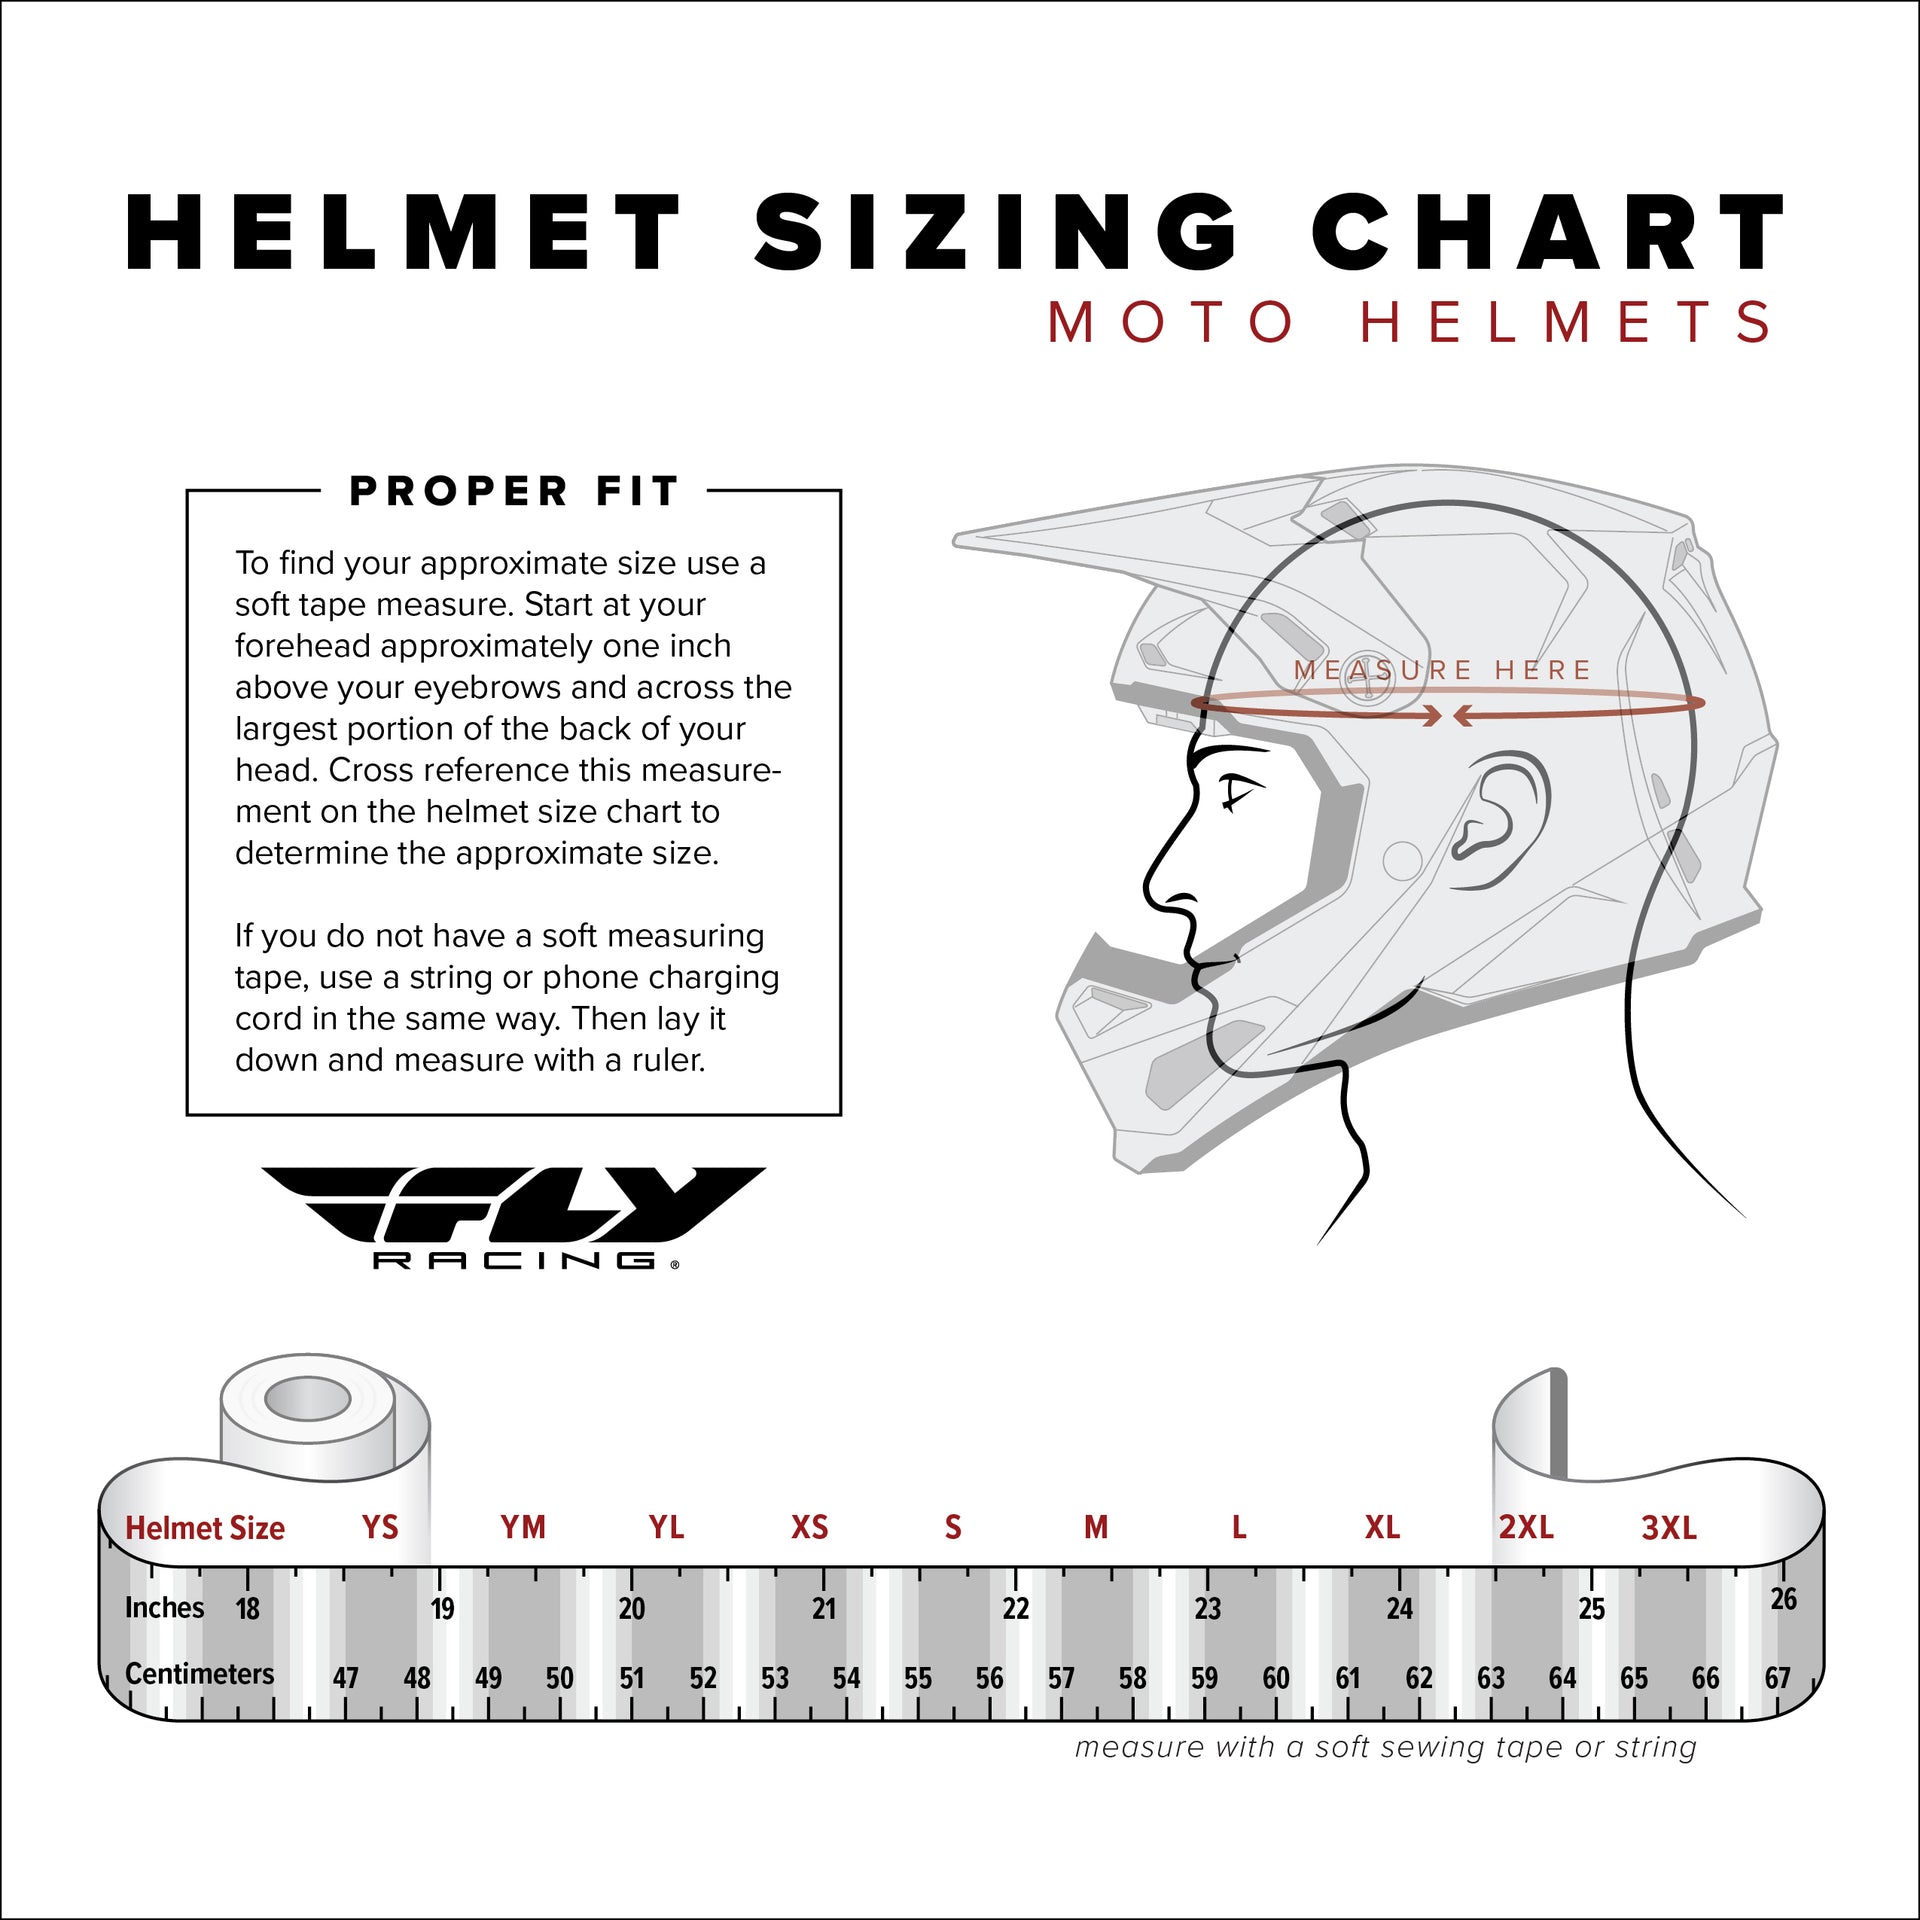 Fly Racing - Kinetic Menace Helmet